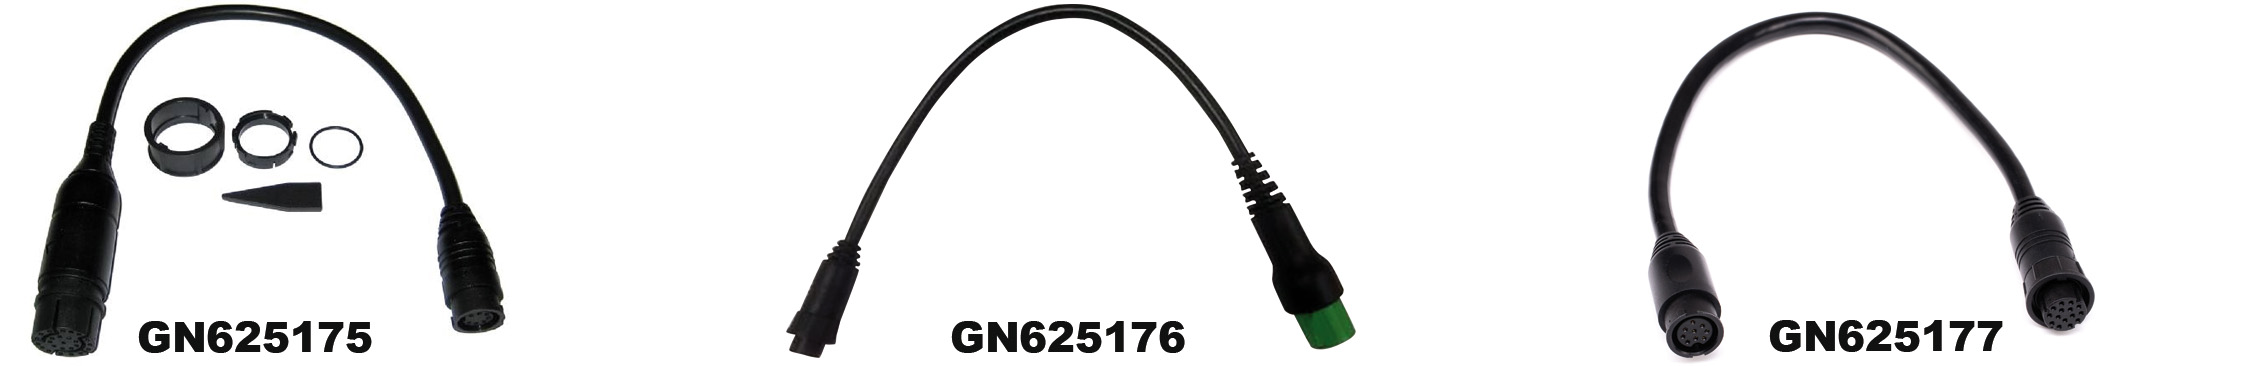 GN625175